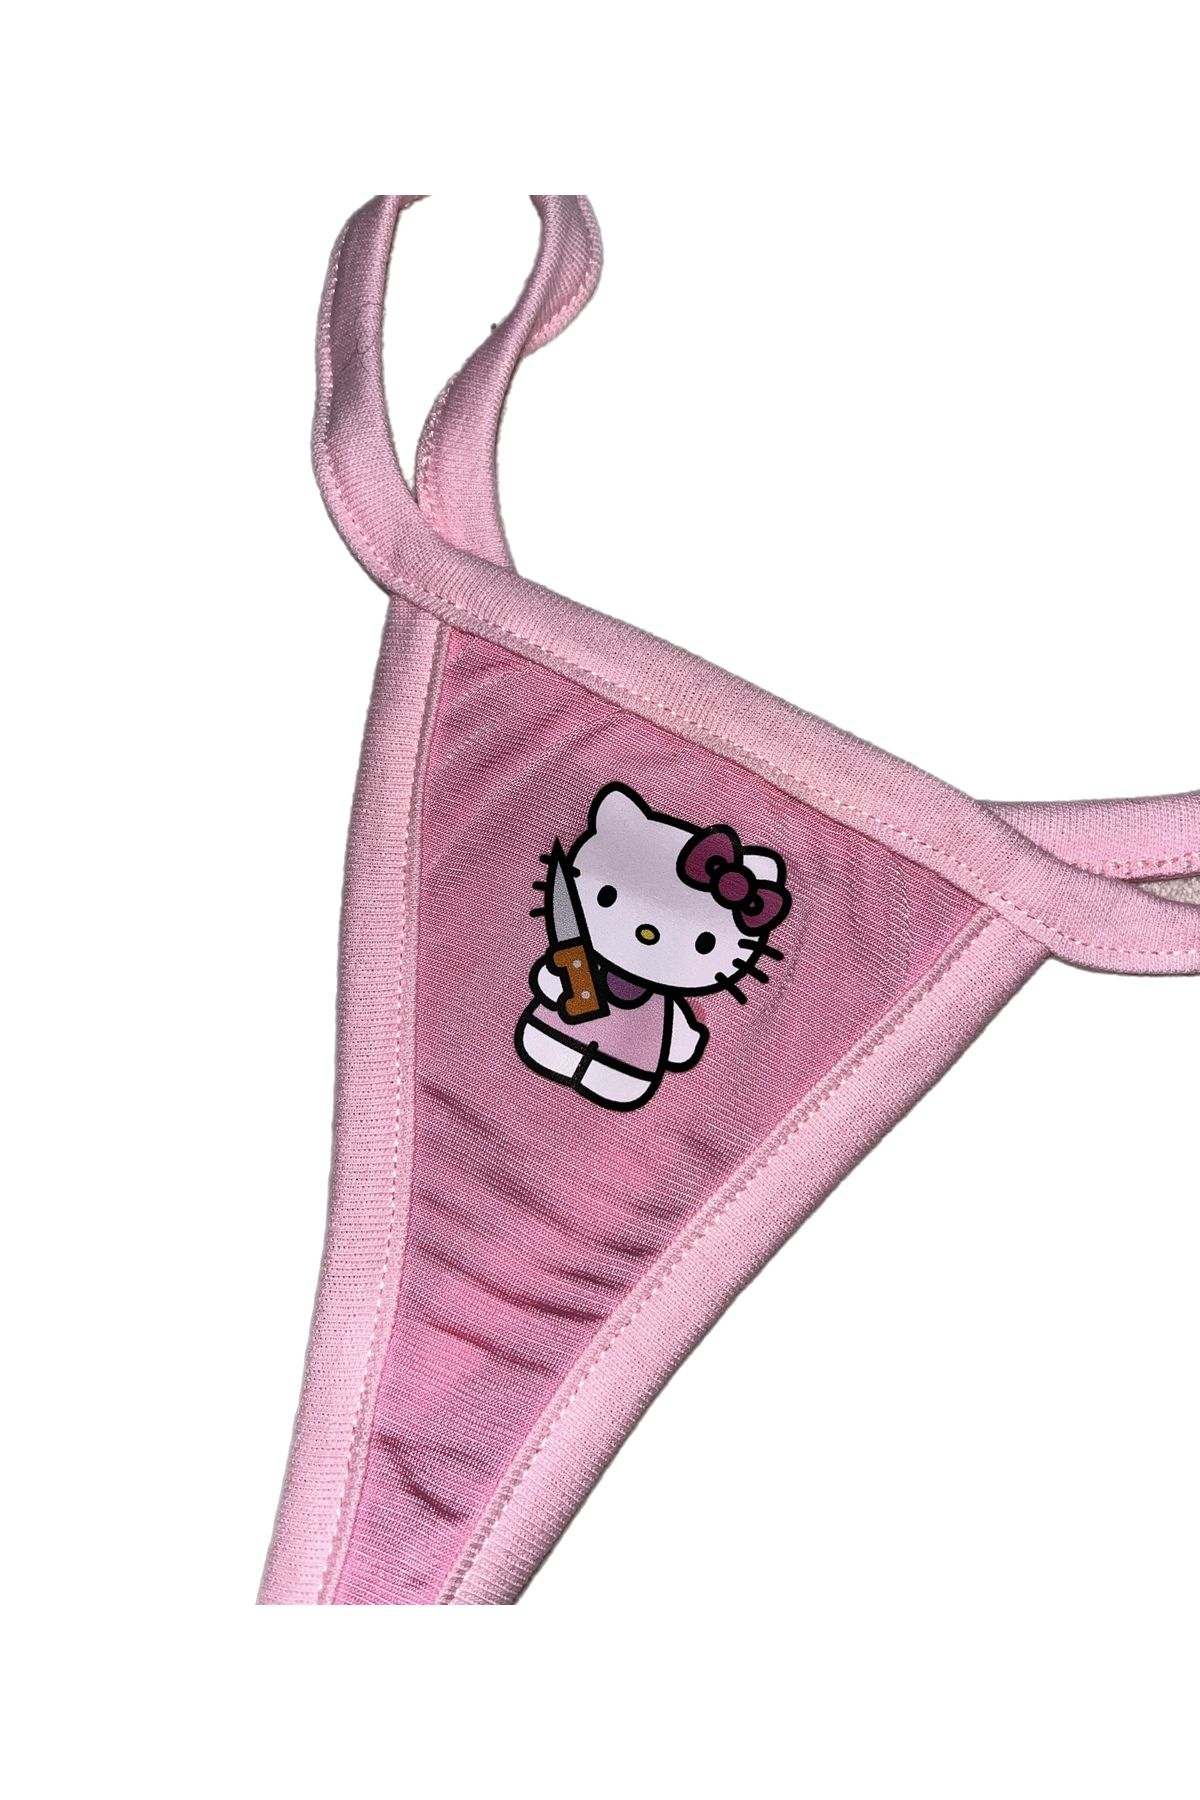 Lolipop Butik Alevli Babygirl, Melek Kalpli Hello Kitty, İskelet Hello Kitty  Baskılı Üçlü T-String Model Tanga Set Fiyatı, Yorumları - Trendyol